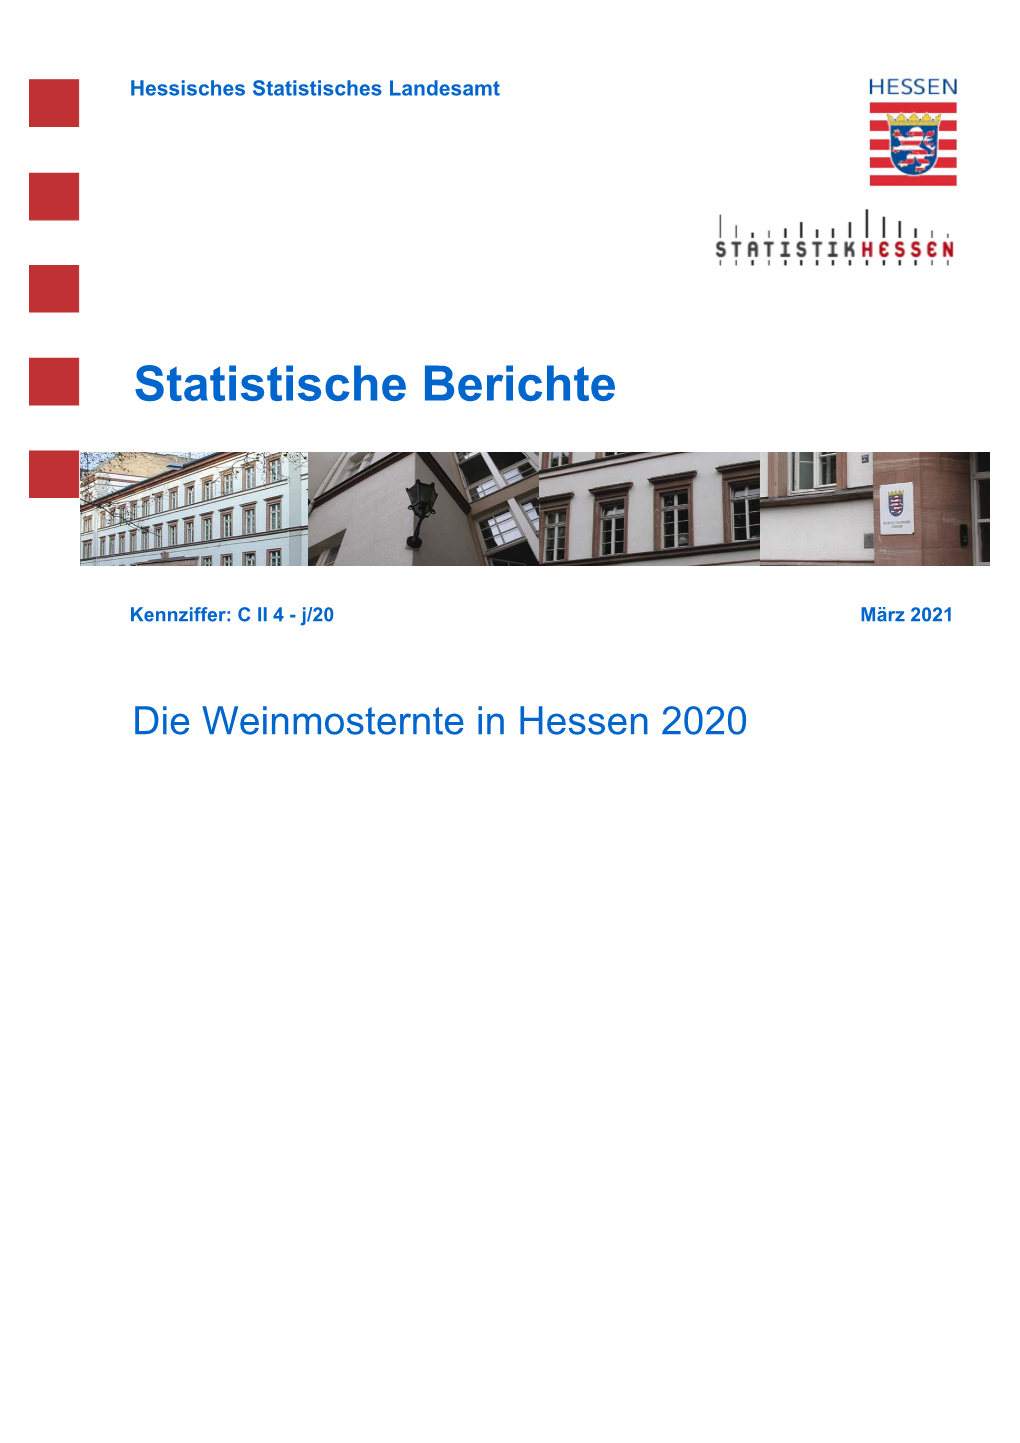 Die Weinmosternte in Hessen 2020 Hessisches Statistisches Landesamt, Wiesbaden